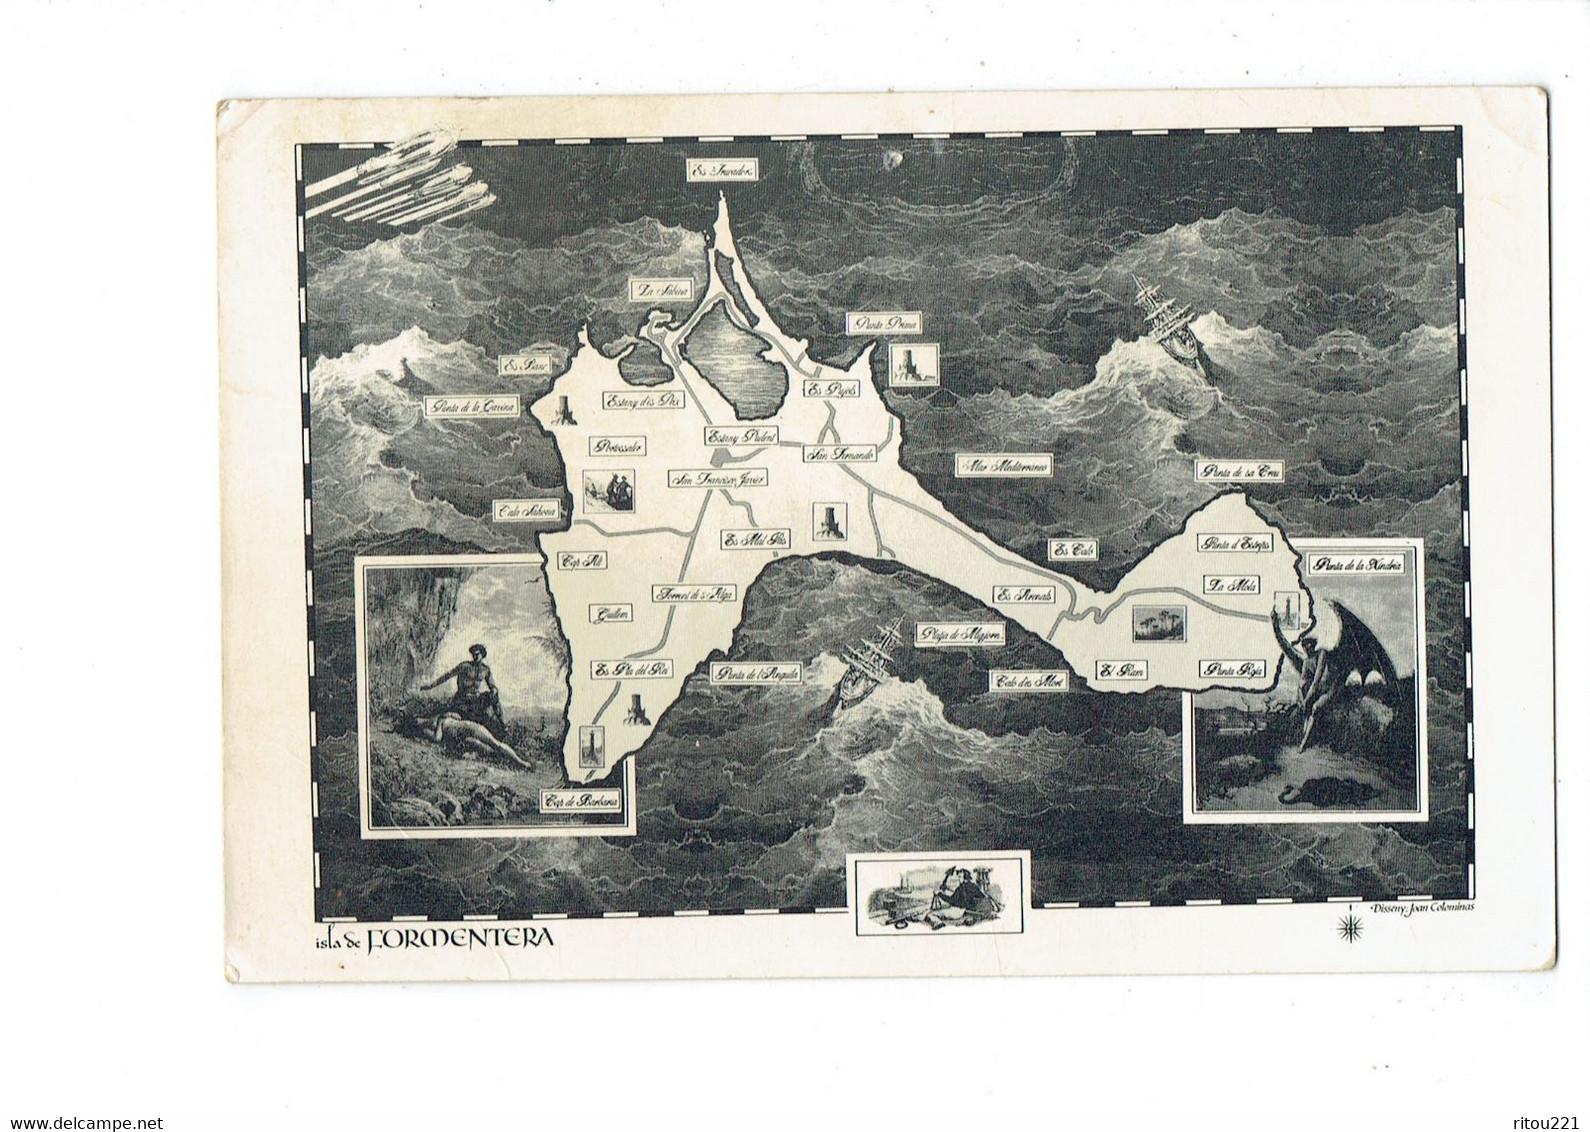 Cpm - FORMENTERA -- Carte Géographique - Illustration Homme Chauve-souris - Hélicoptère - 1987 - Formentera